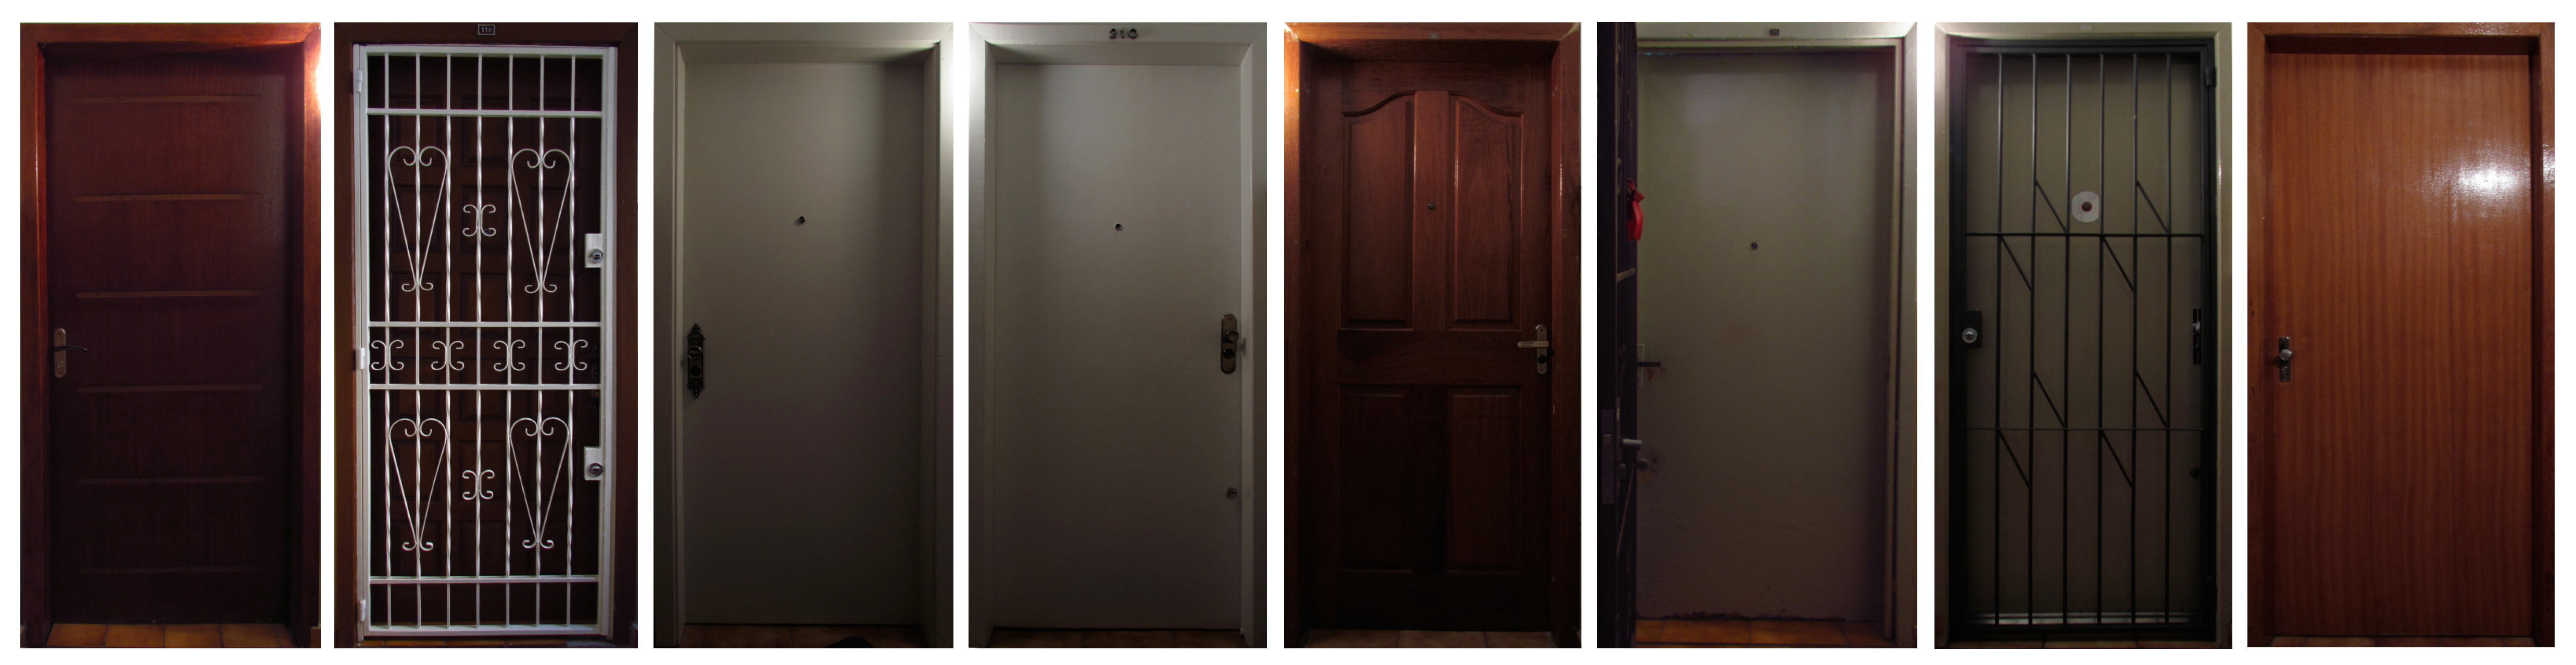  Figura 1 – Letícia Bertagna, Porta de entrada dos oito apartamentos envolvidos, 2011. Fonte: Acervo pessoal da artista.